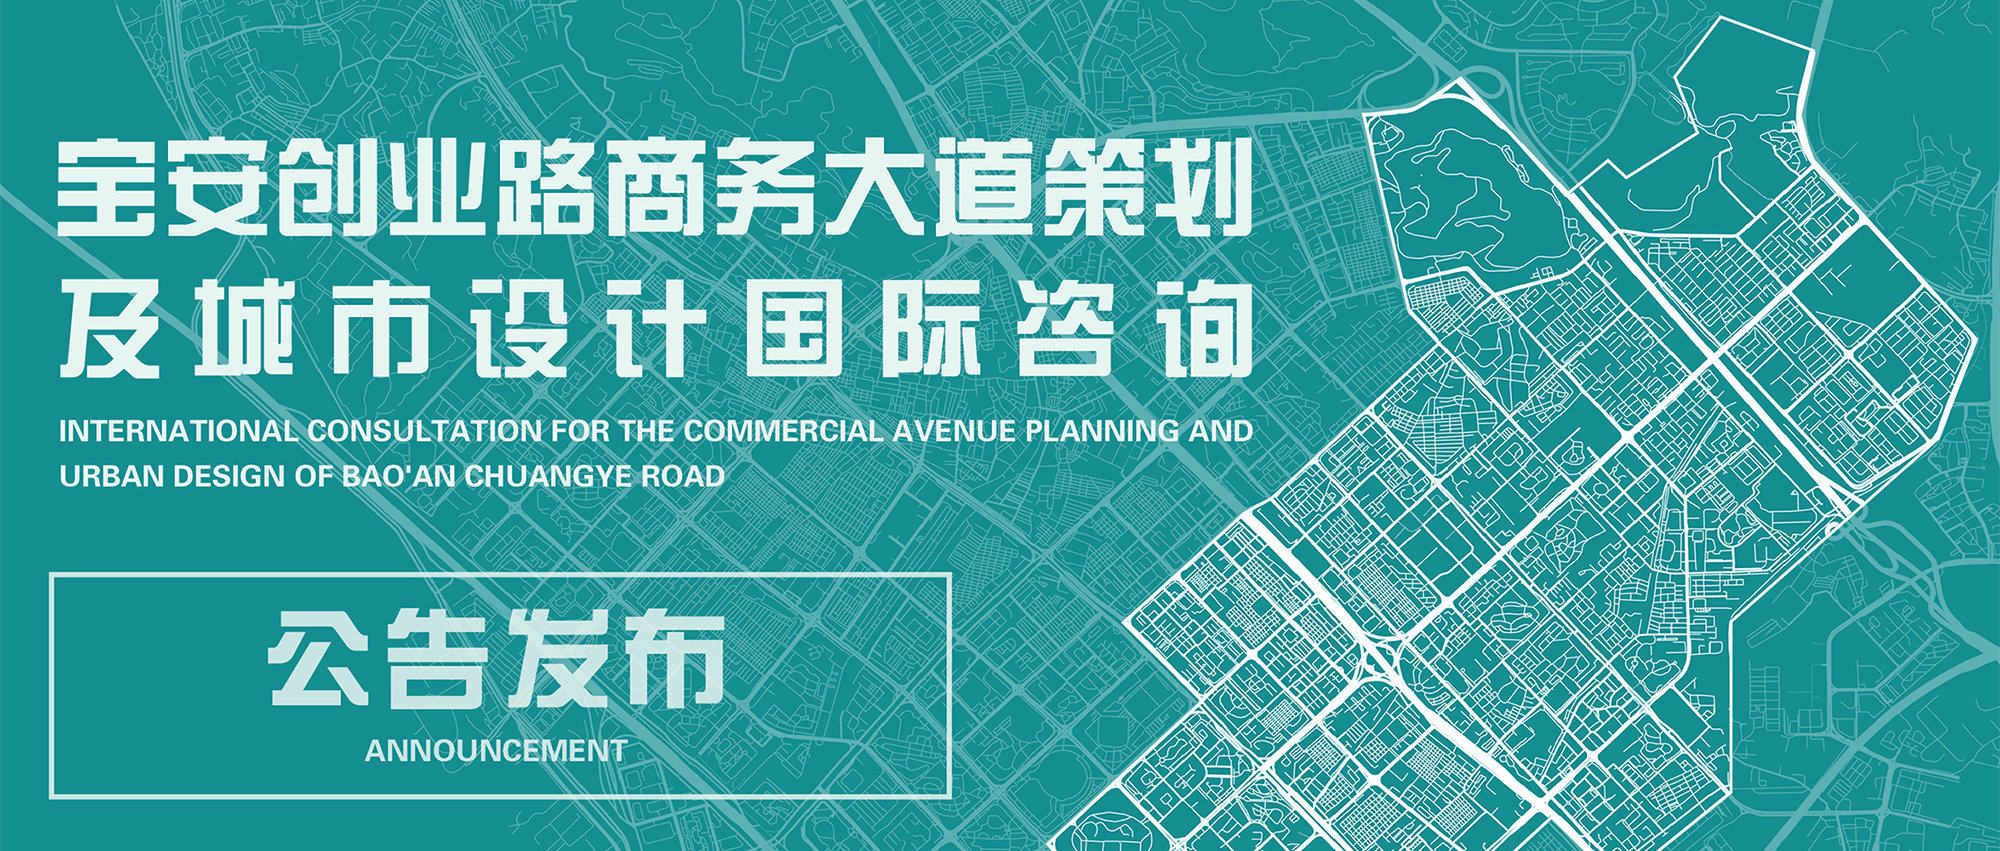 正式公告丨宝安创业路商务大道策划及城市设计国际咨询